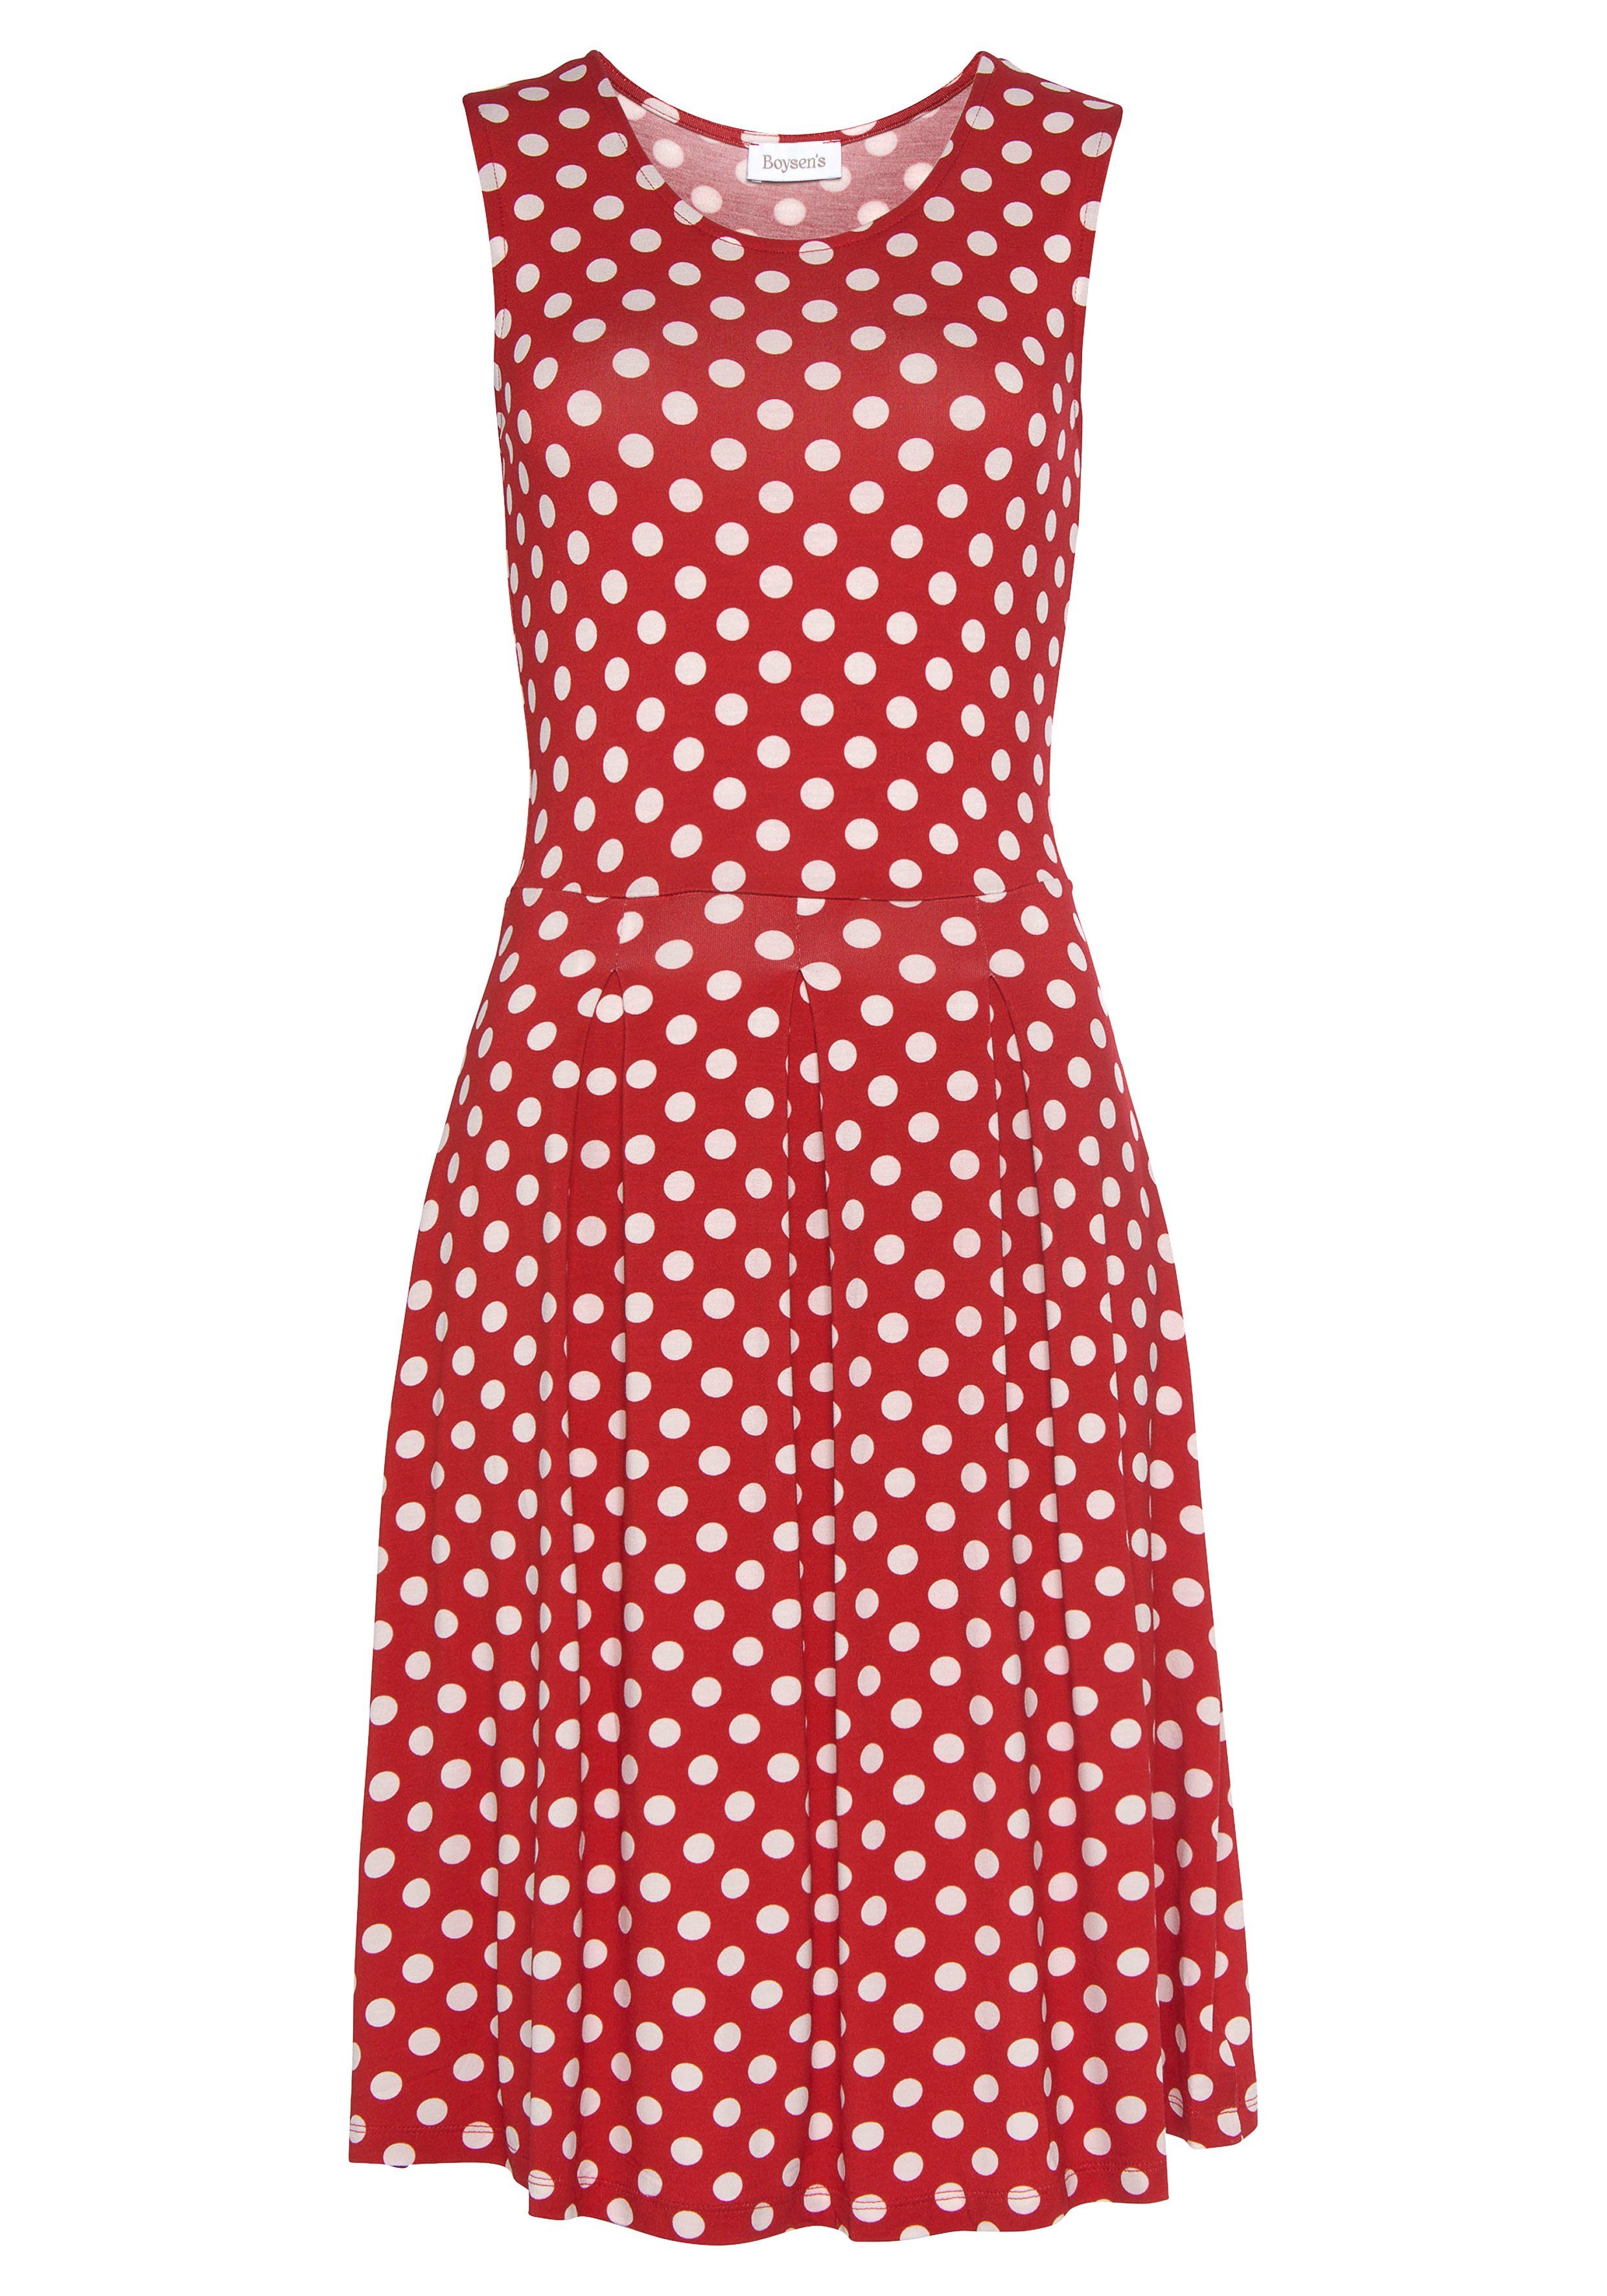 Boysen's Jerseykleid mit süßem Tupfen-Print rot, weiß